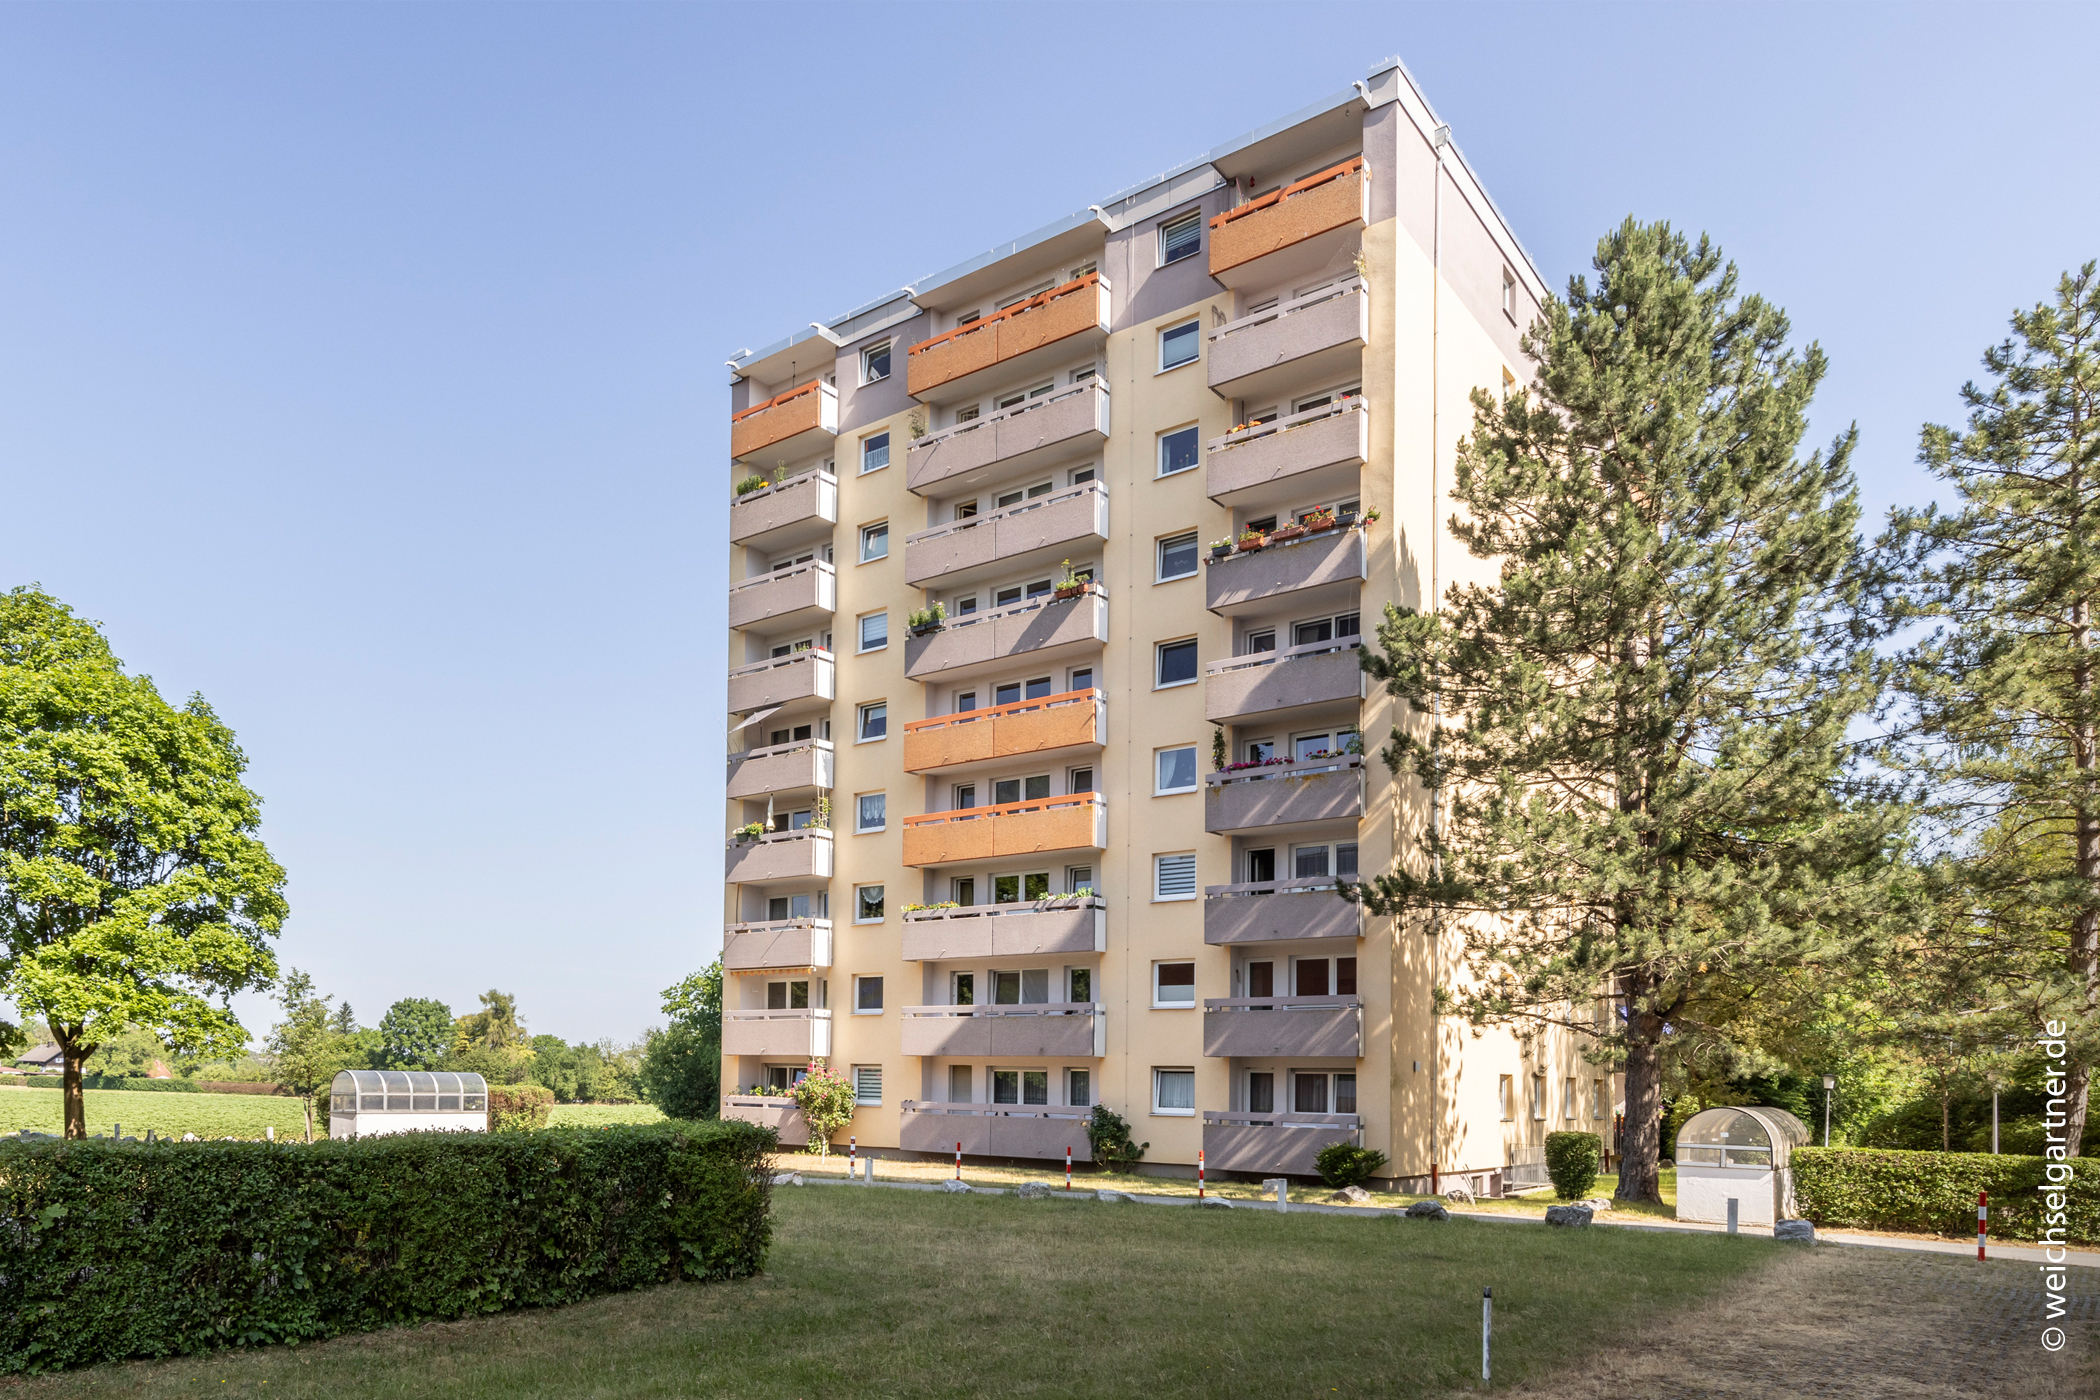 Vermietete Eigentumswohnung in grüner Wohnlage, 80689 München, Etagenwohnung